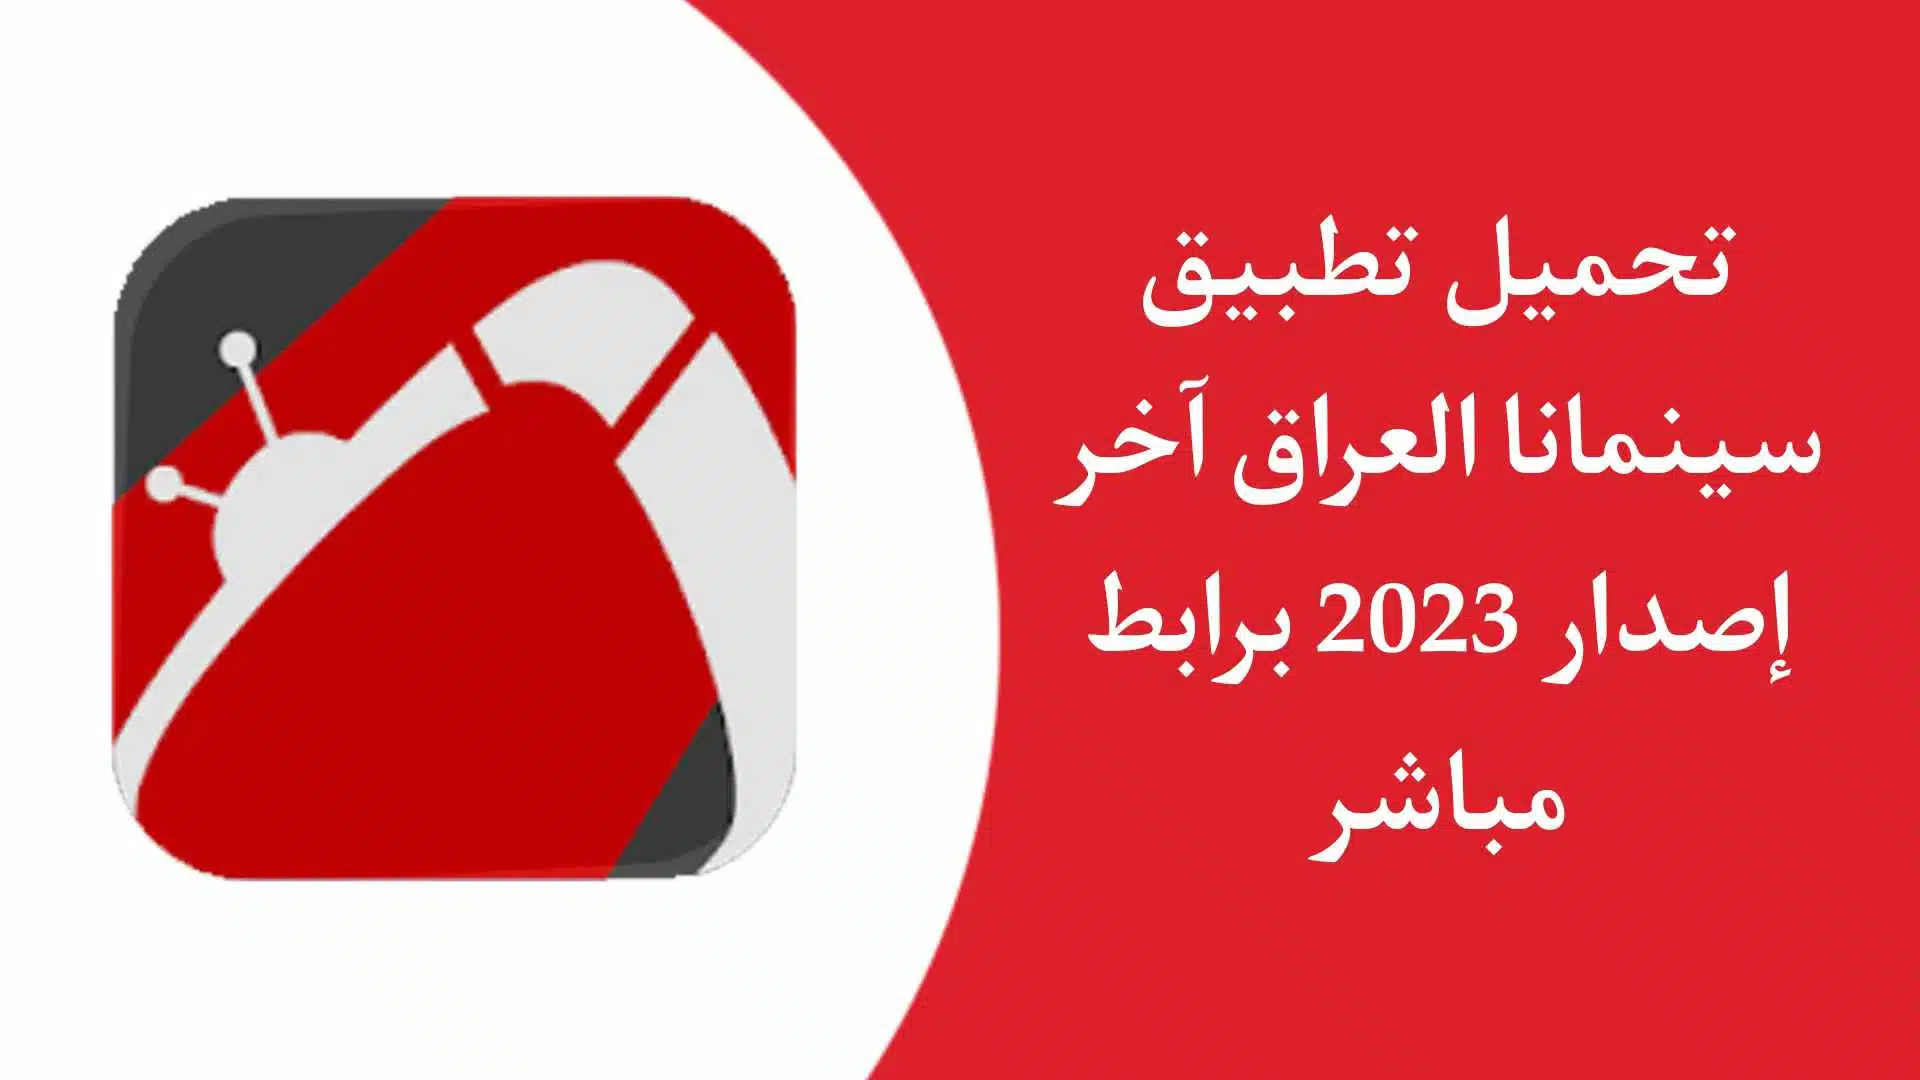 تحميل تطبيق سينمانا العراق اخر اصدار 2023 لمشاهدة الافلام والمسلسلات مجانا